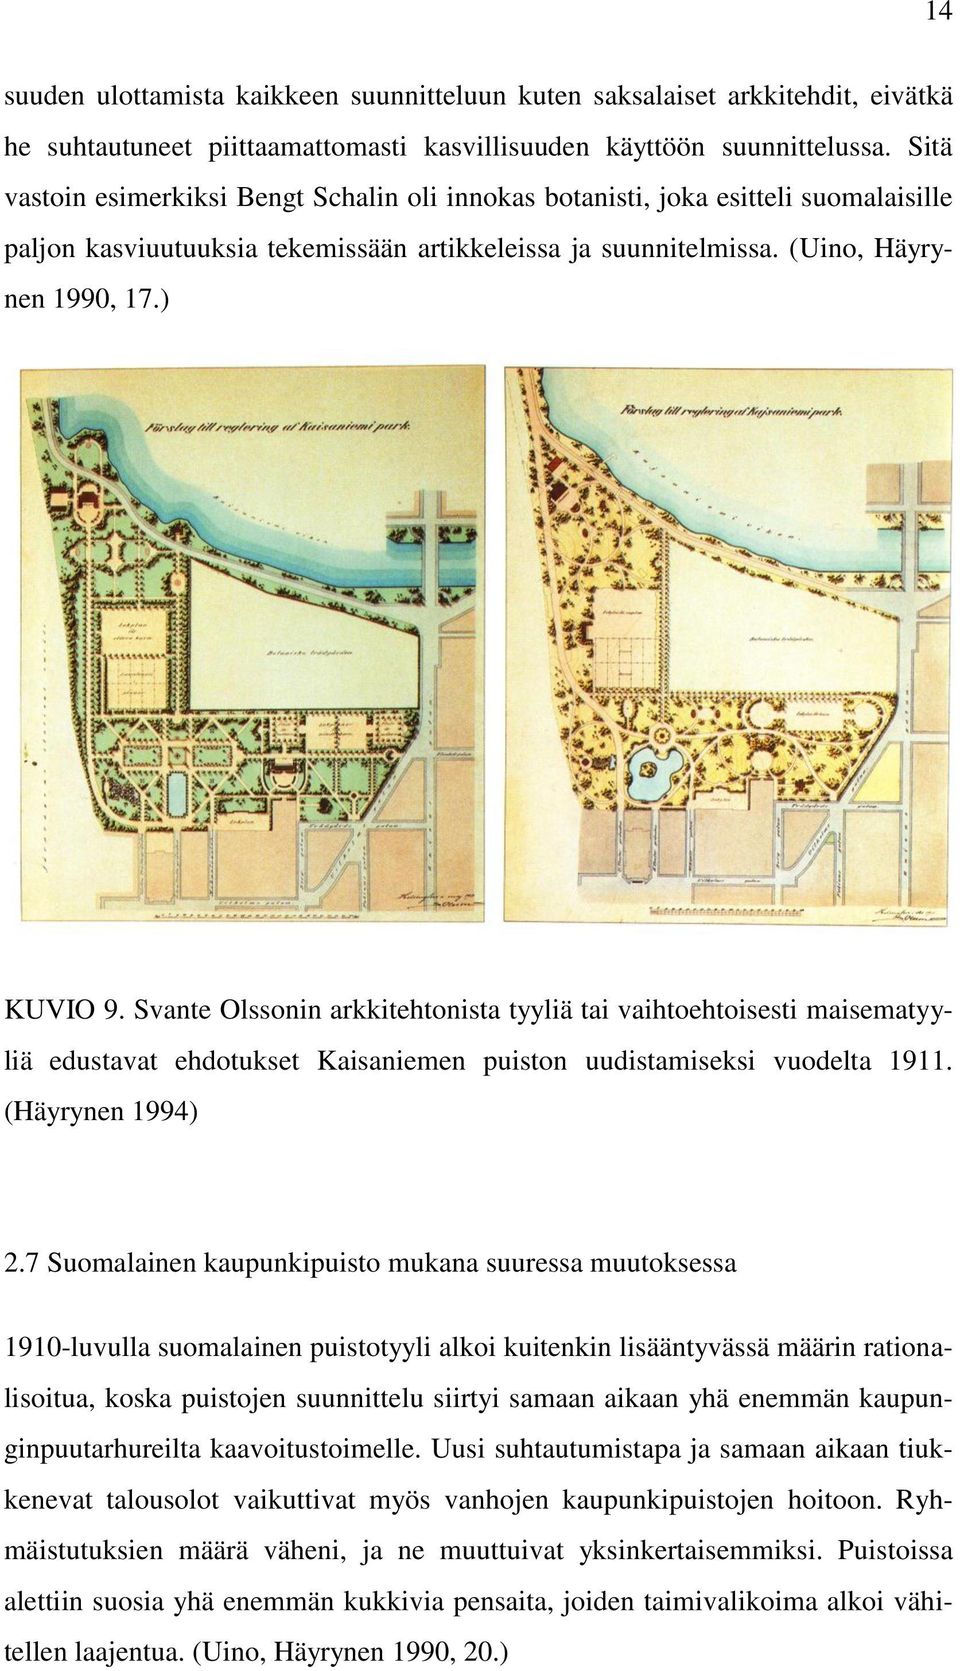 Svante Olssonin arkkitehtonista tyyliä tai vaihtoehtoisesti maisematyyliä edustavat ehdotukset Kaisaniemen puiston uudistamiseksi vuodelta 1911. (Häyrynen 1994) 2.